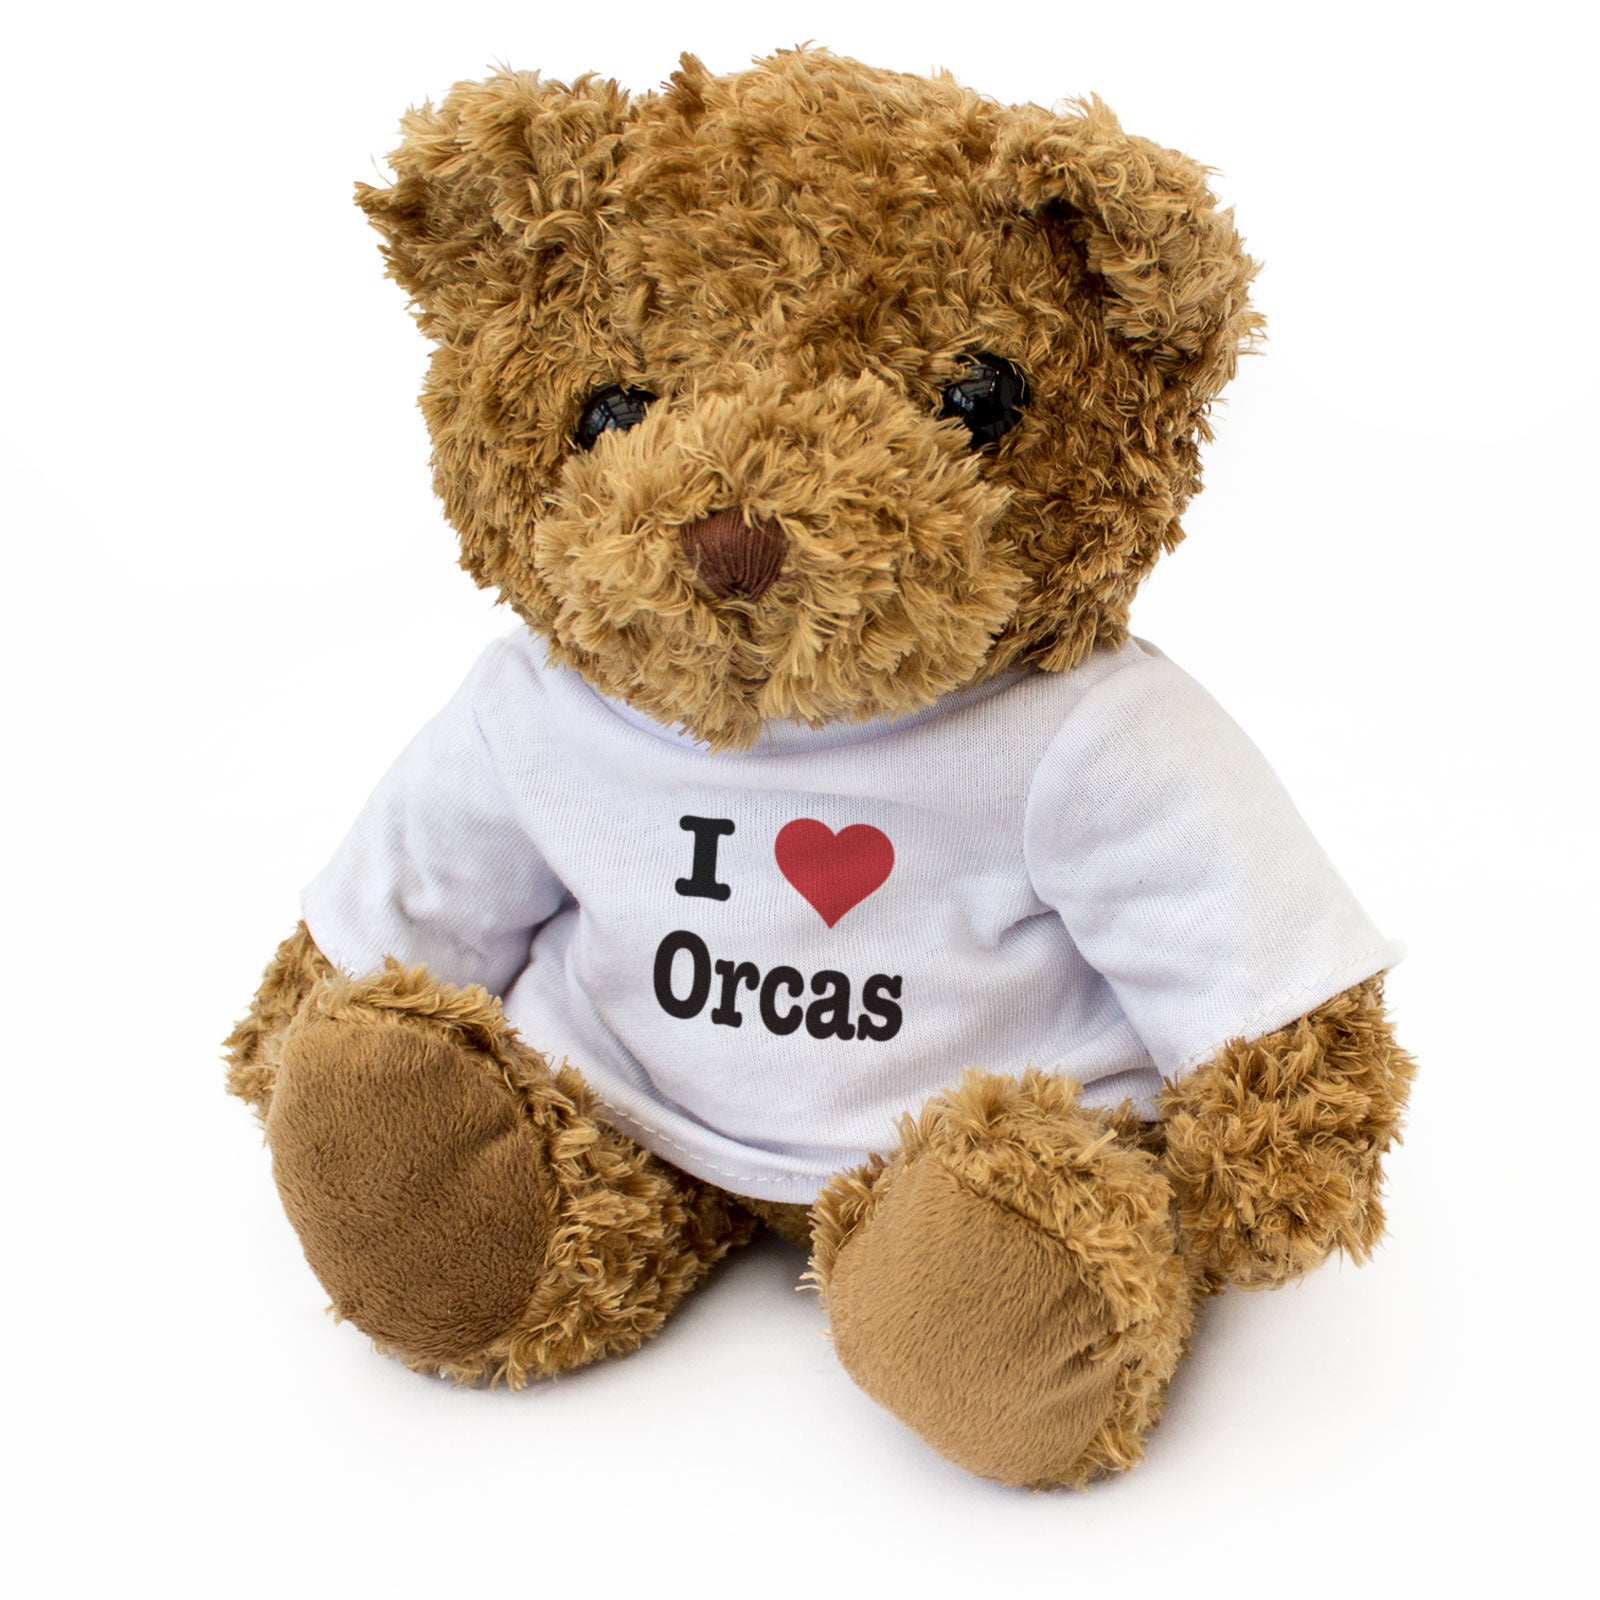 I Love Orcas - Teddy Bear